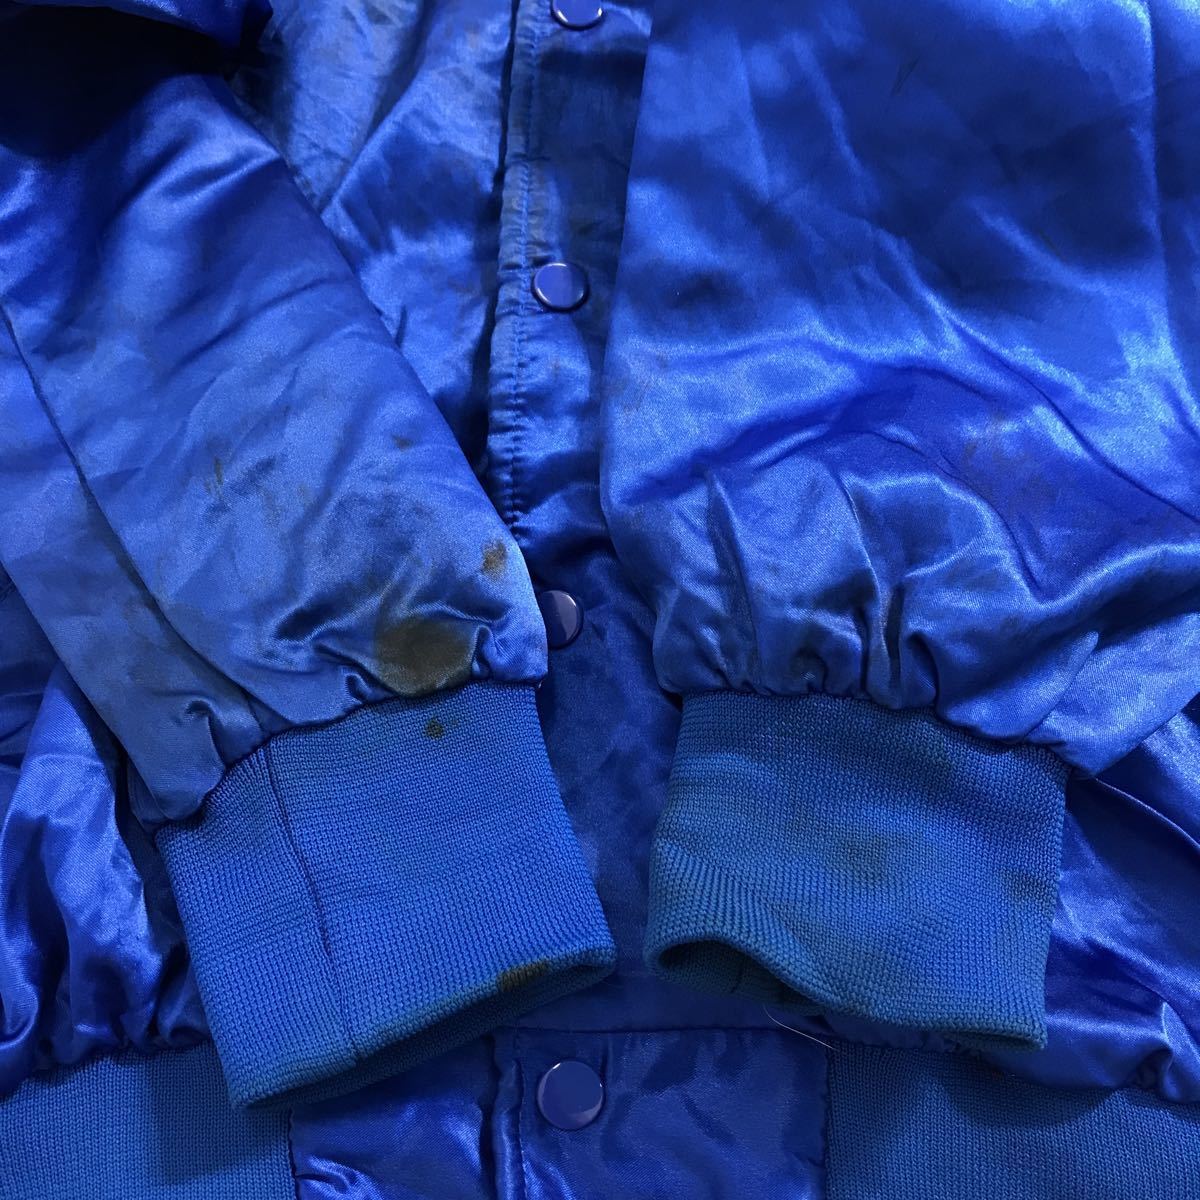  б/у б/у одежда CLUB21 нейлон куртка M голубой куртка с логотипом б/у одежда . America скупка a509-5701